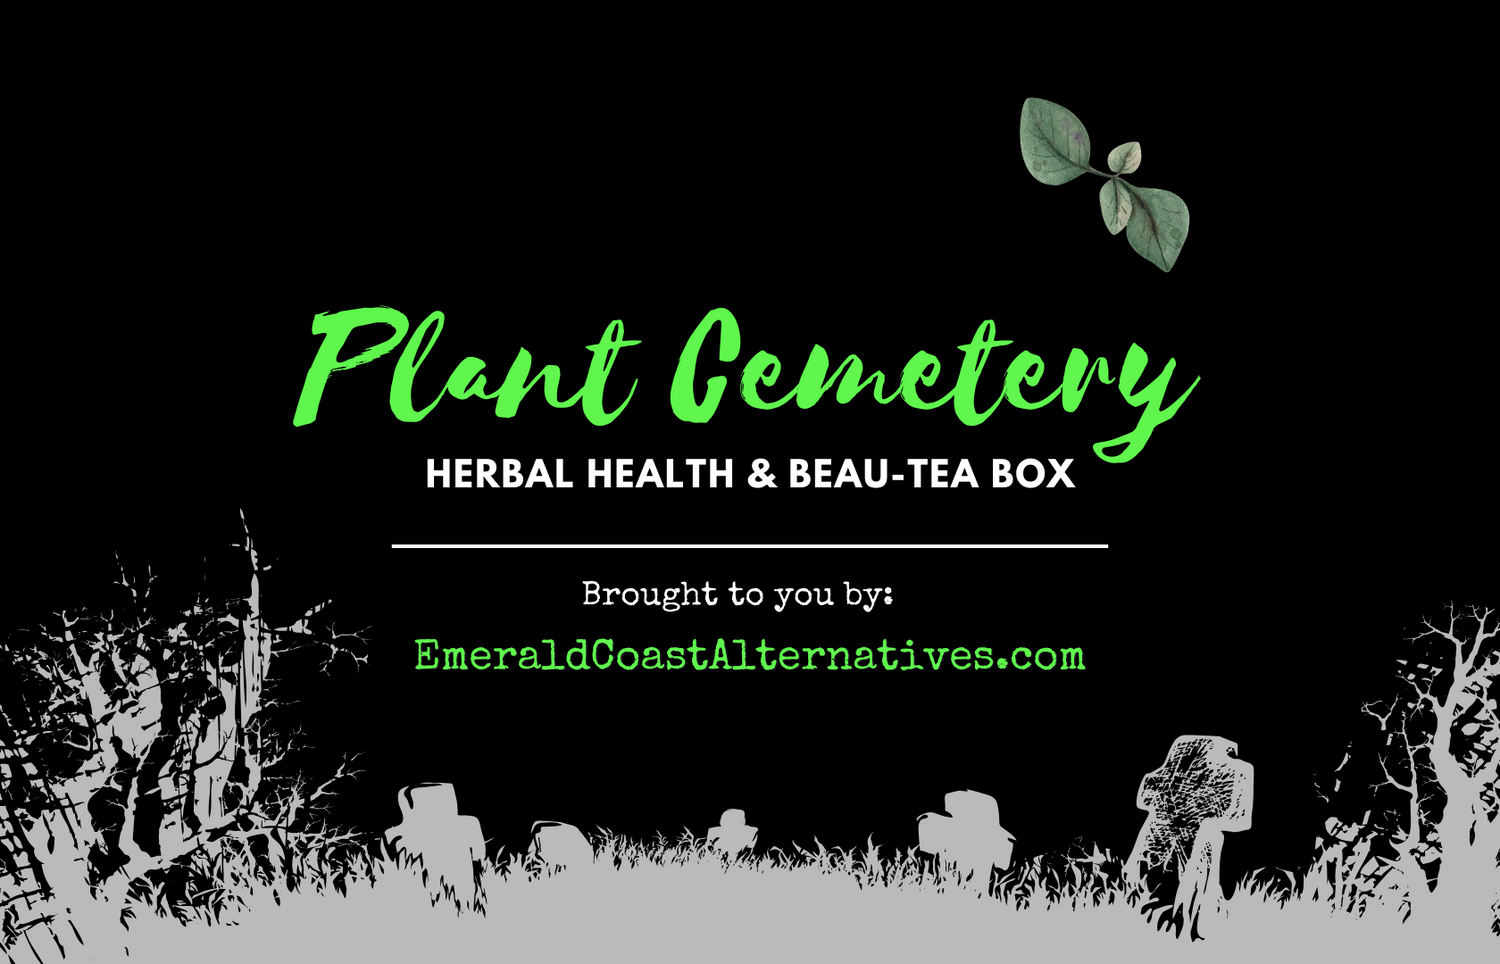 Plant Cemetery Herbal Subscription Box, Tea Subscription, Herbal Subscription, Learn more about herbs and teas, Teas 101, Herbs for beginners